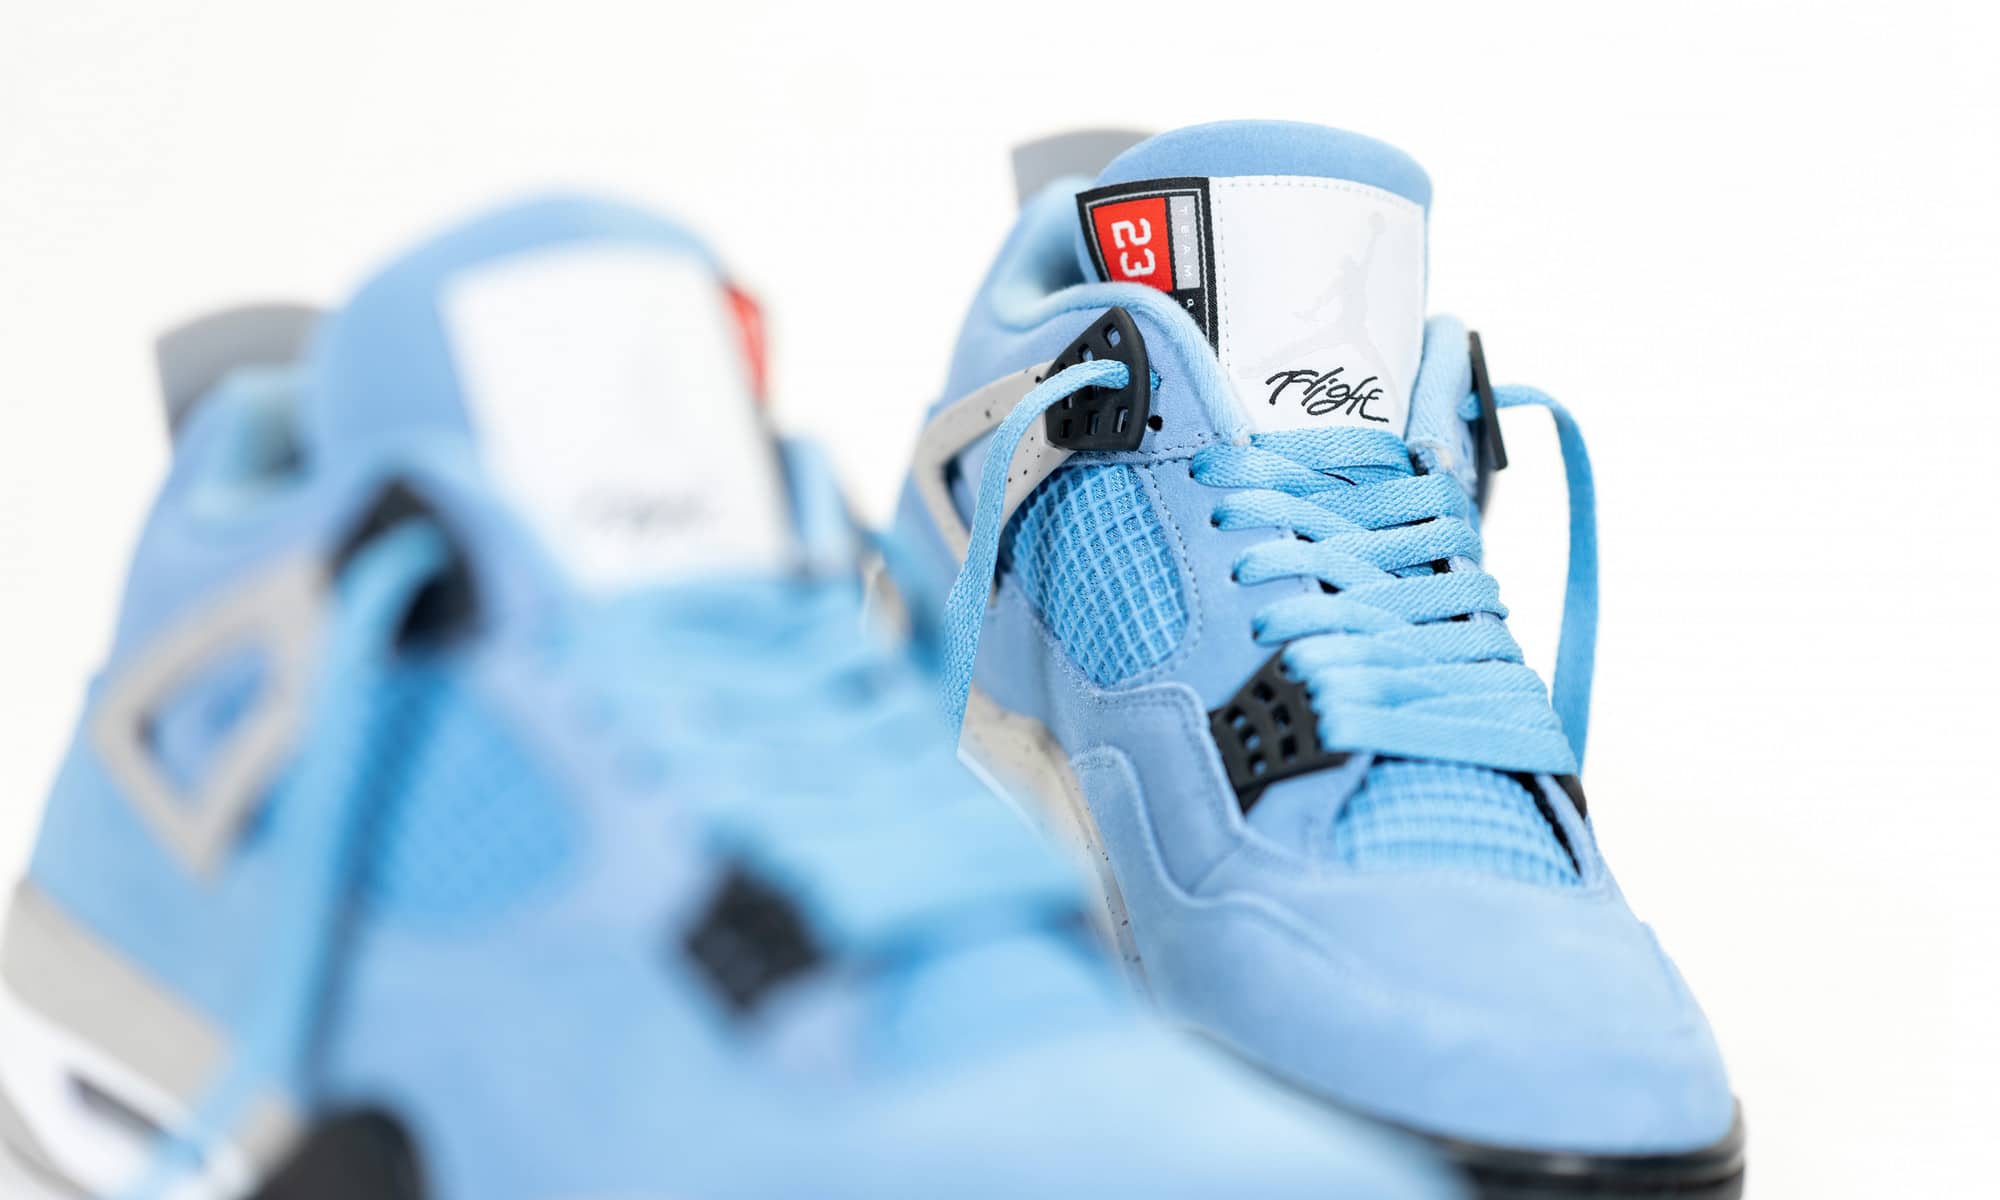 Top 10 Air Jordan 4 Sneakers Of All Time - Sneaker News